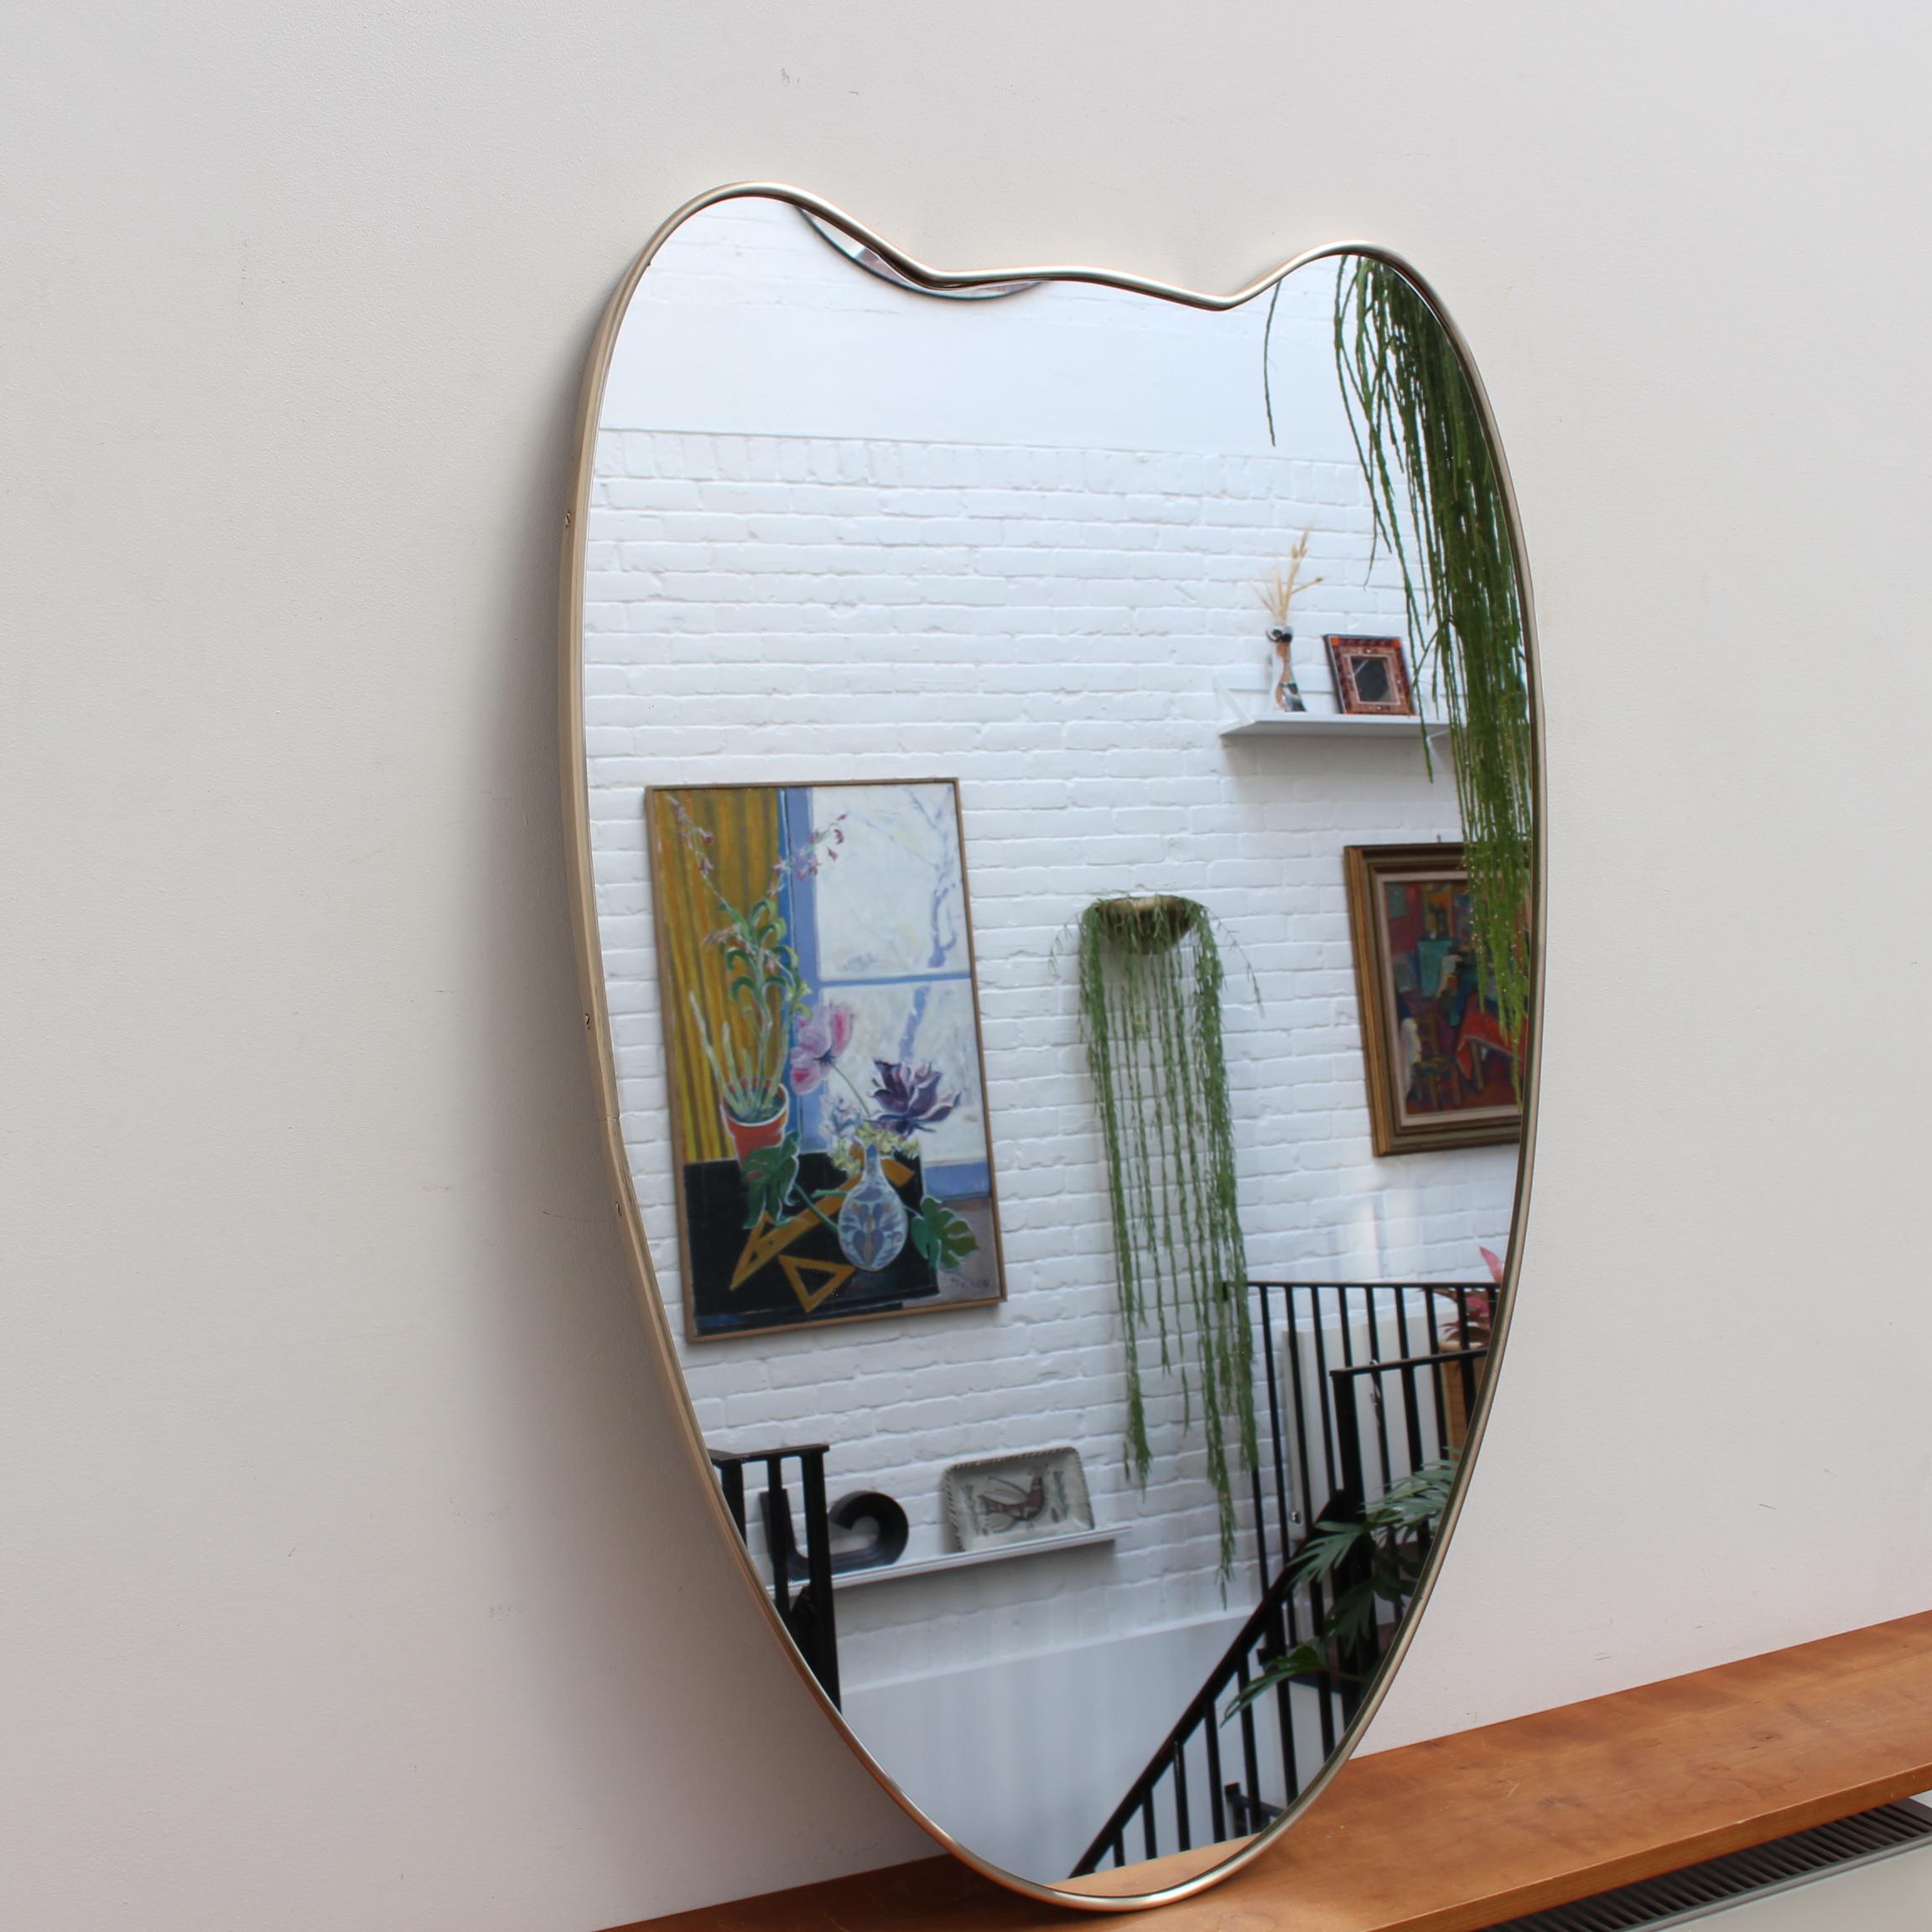 Italienischer Wandspiegel aus der Mitte des Jahrhunderts mit Messingrahmen (ca. 1950). Der Spiegel ist klassisch geformt und zeichnet sich durch einen modernen Stil aus. Es ist insgesamt in sehr gutem Zustand. Auf dem frisch polierten Messingrahmen